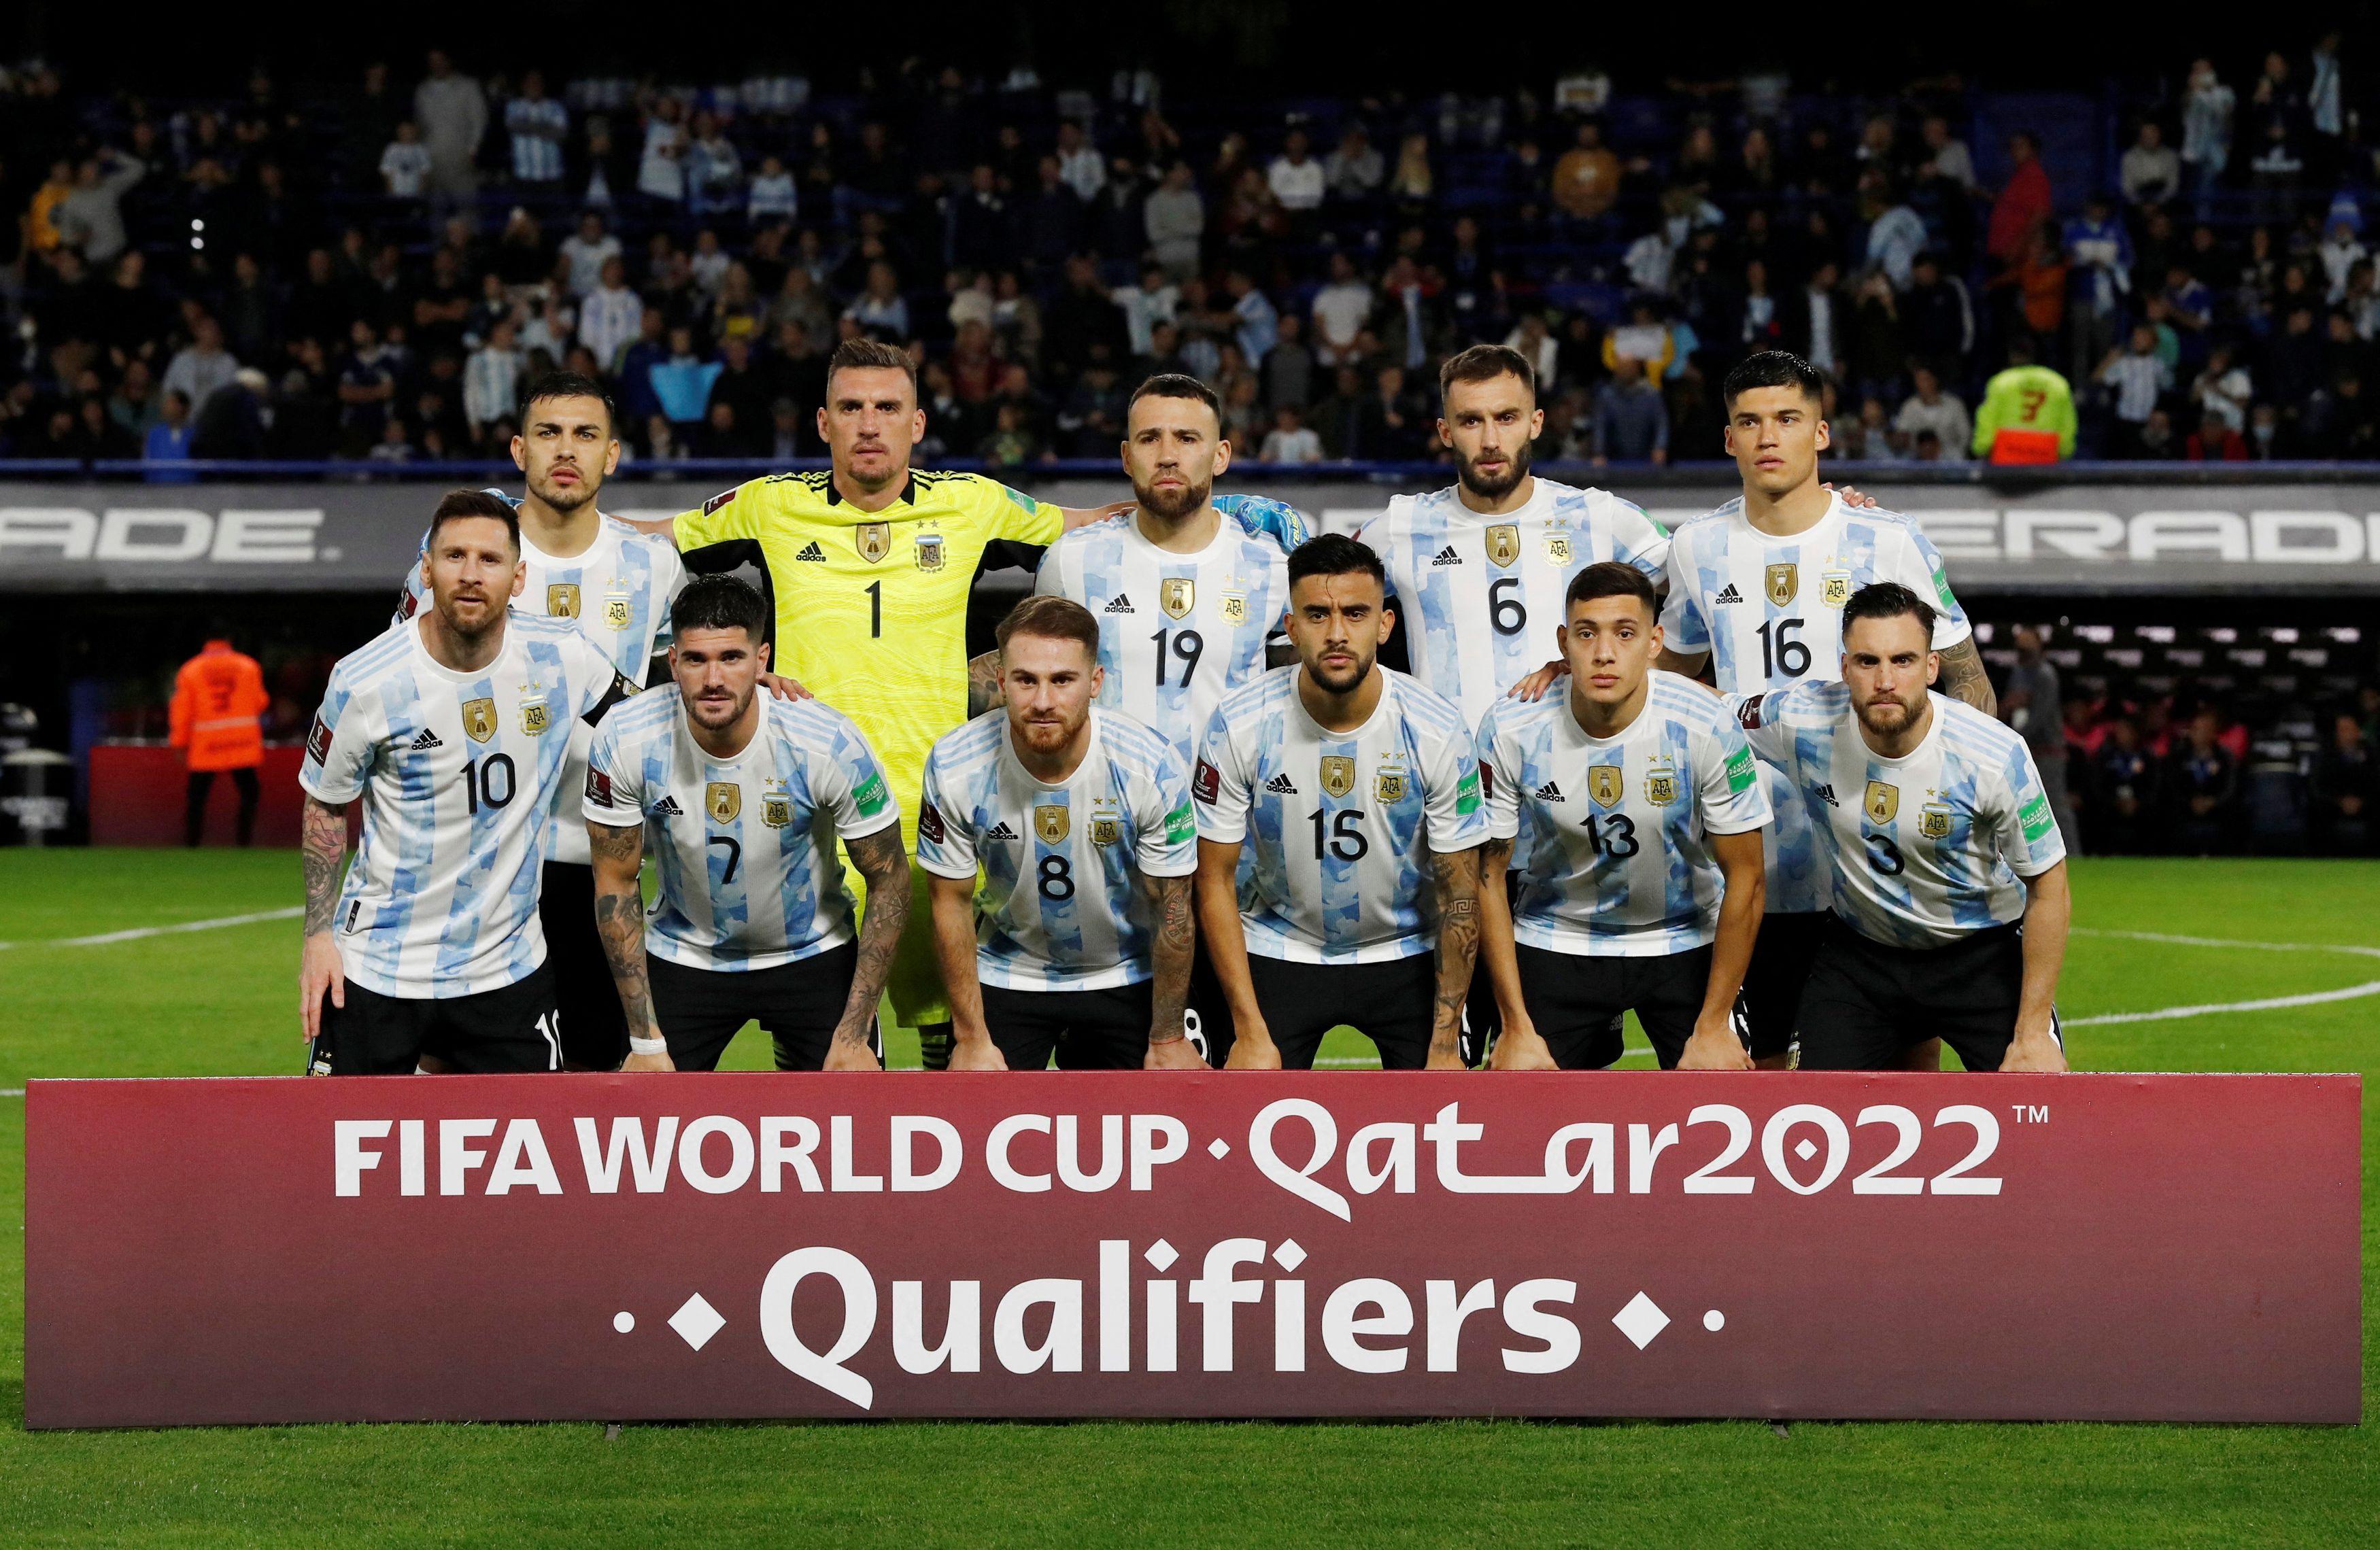 Copa do Mundo 2018: veja a lista de convocados das principais